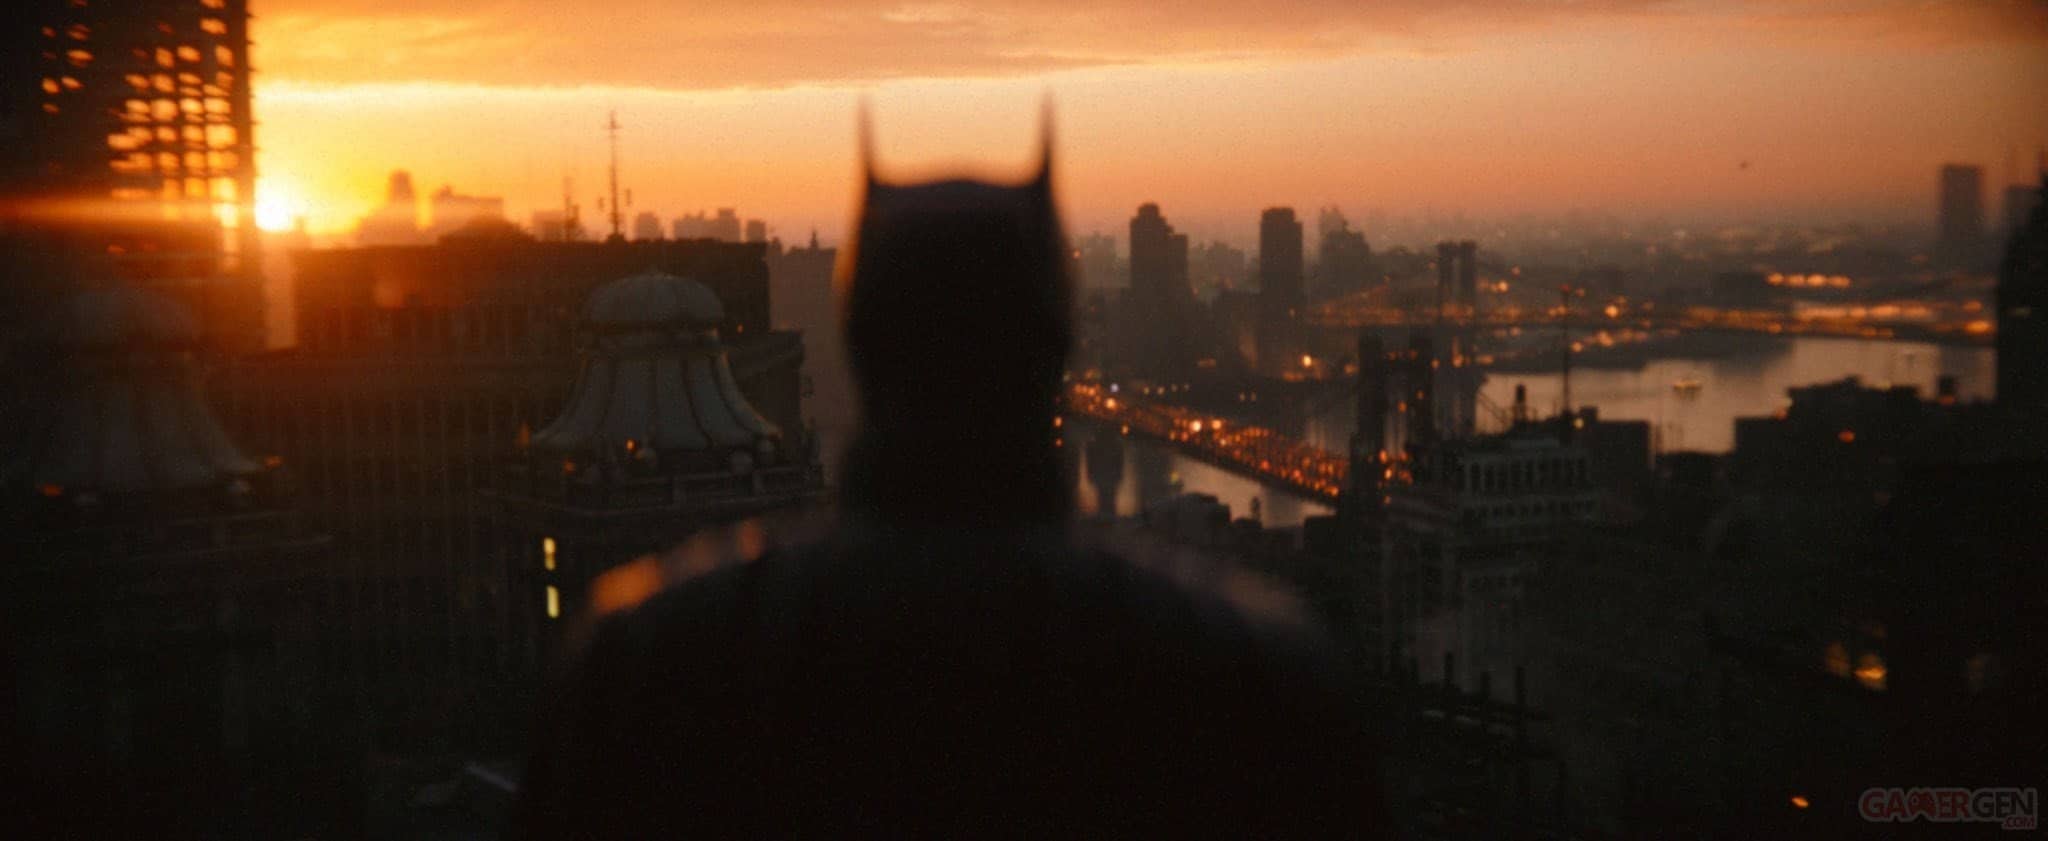 Batman n’est pas qu’un simple super-héros d’après Robert Pattinson